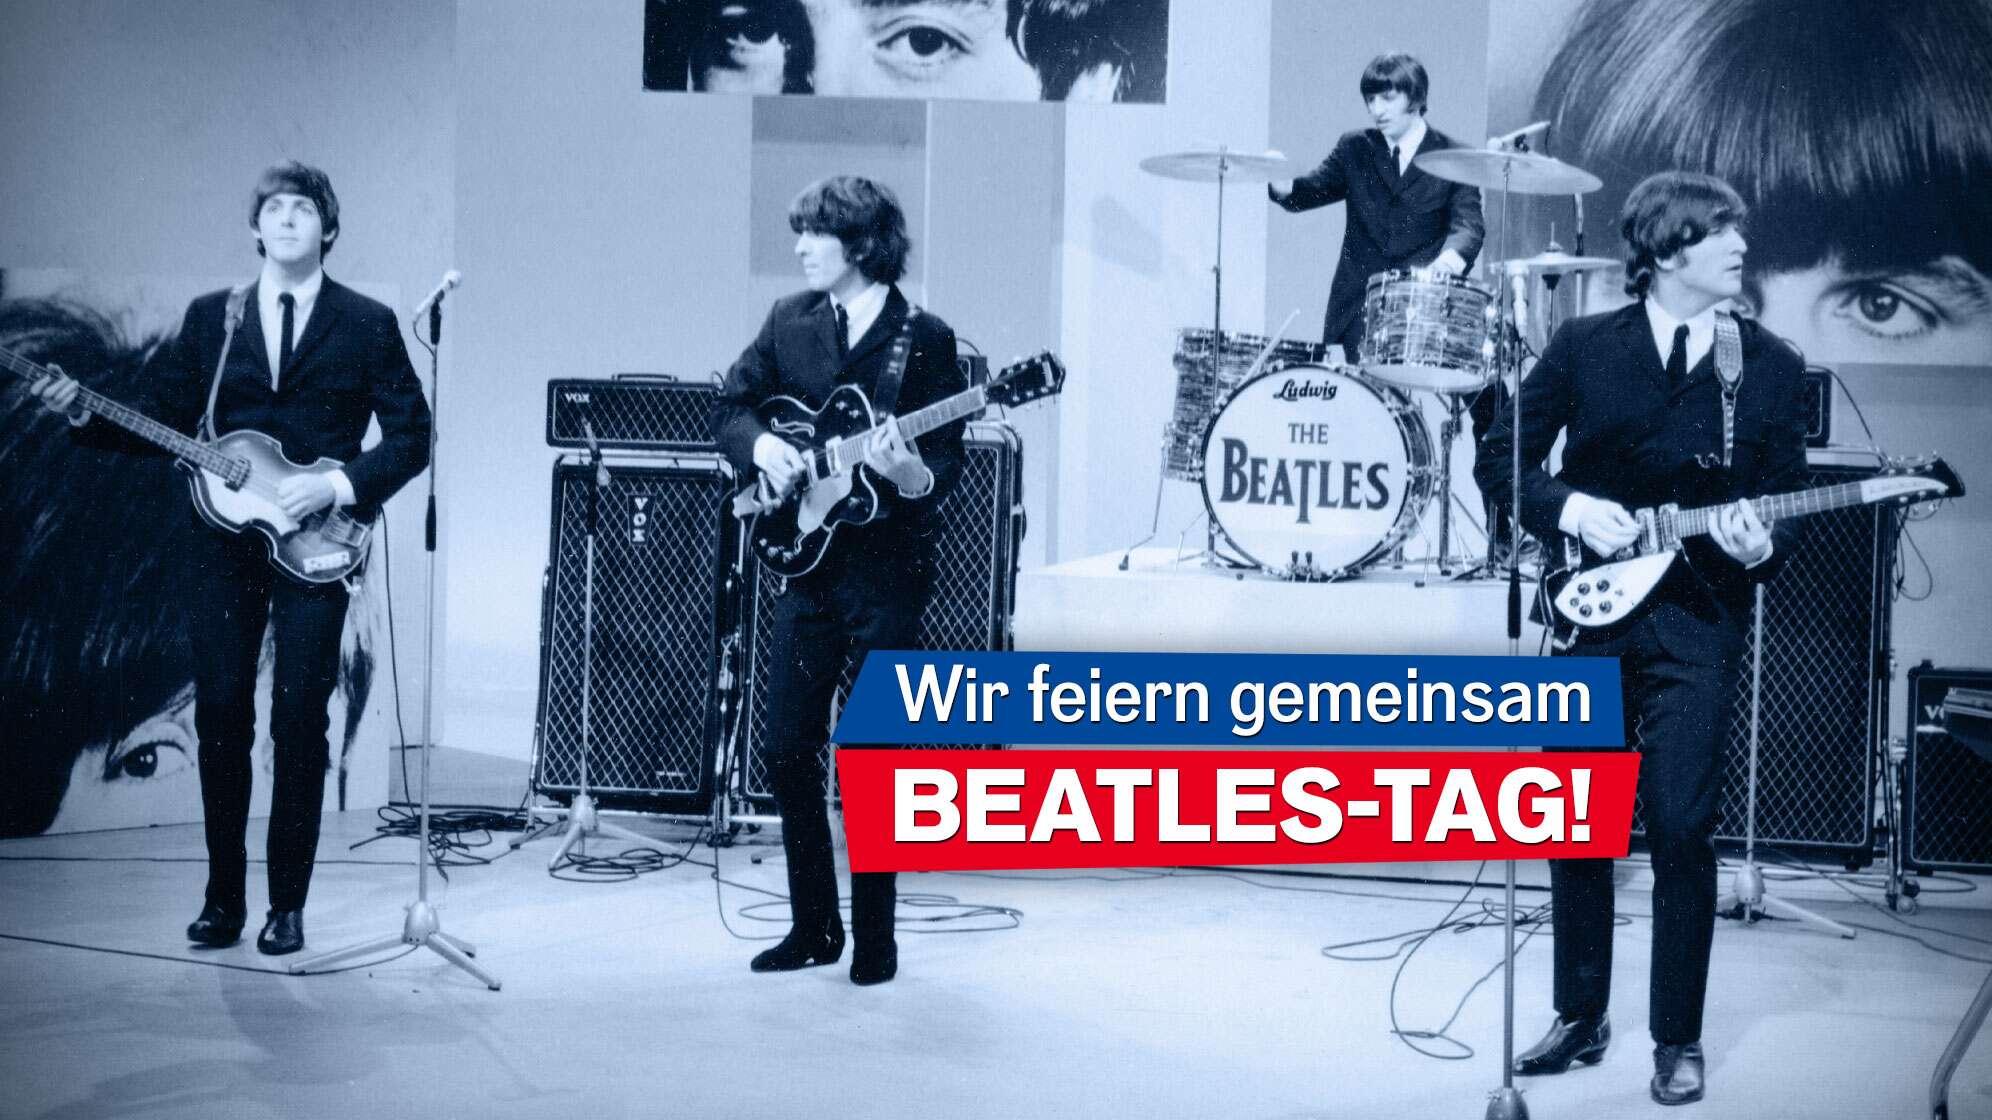 Ein Pressefoto der Beatles beim BBC Radiokonzert in den 60ern, Text "Wir feiern gemeinsam Beatles-Tag!"